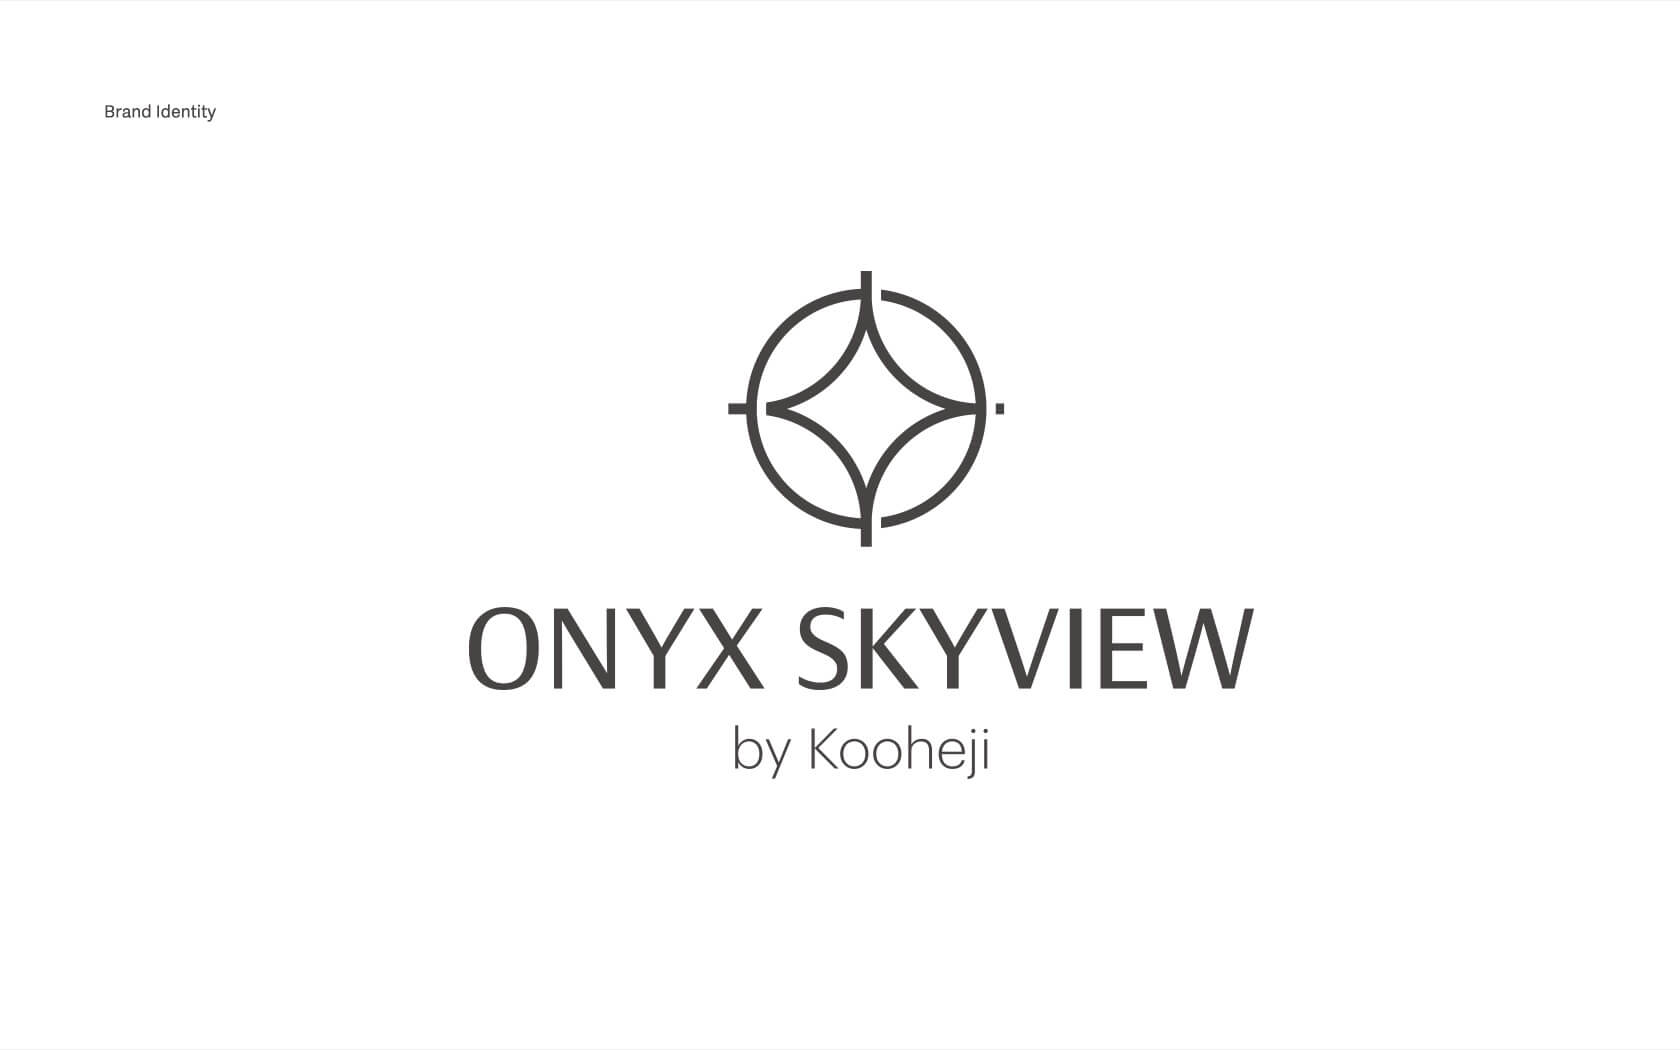 Onyx Skyview. Brand logo